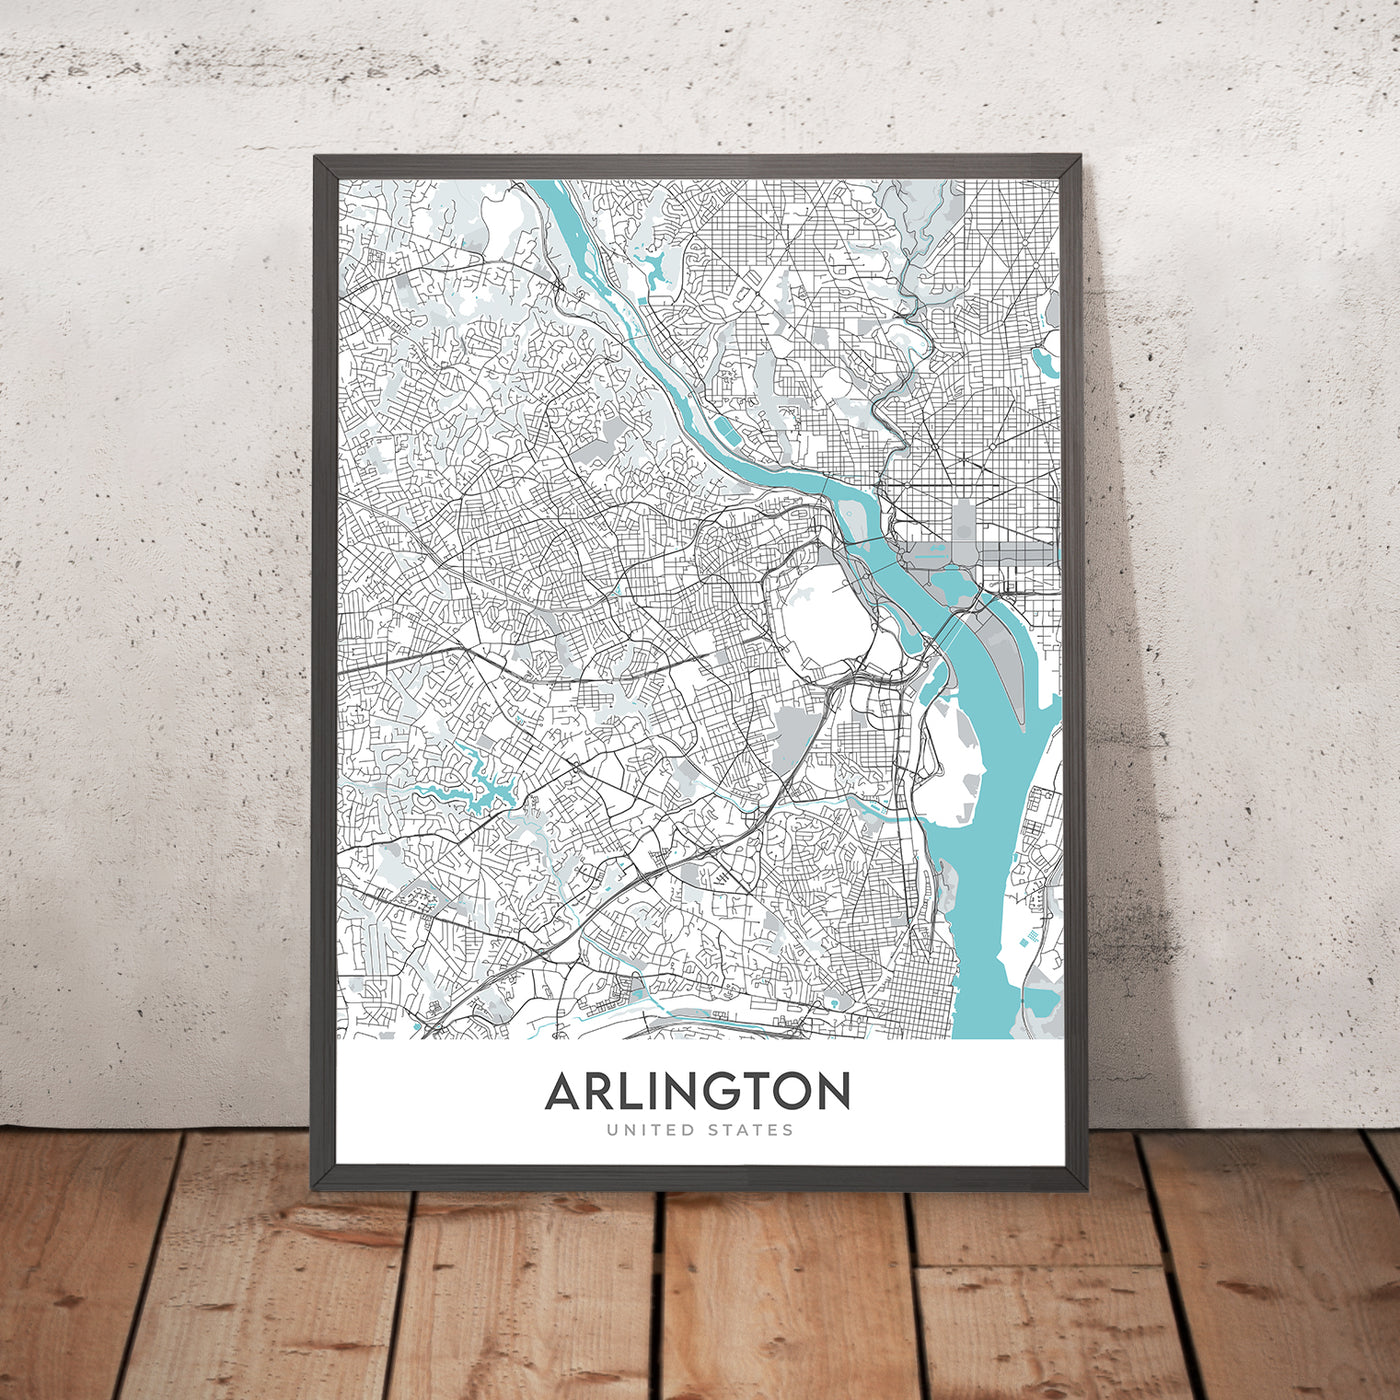 Moderner Stadtplan von Arlington, VA: Arlington National Cemetery, Pentagon, Weißes Haus, Crystal City, Rosslyn